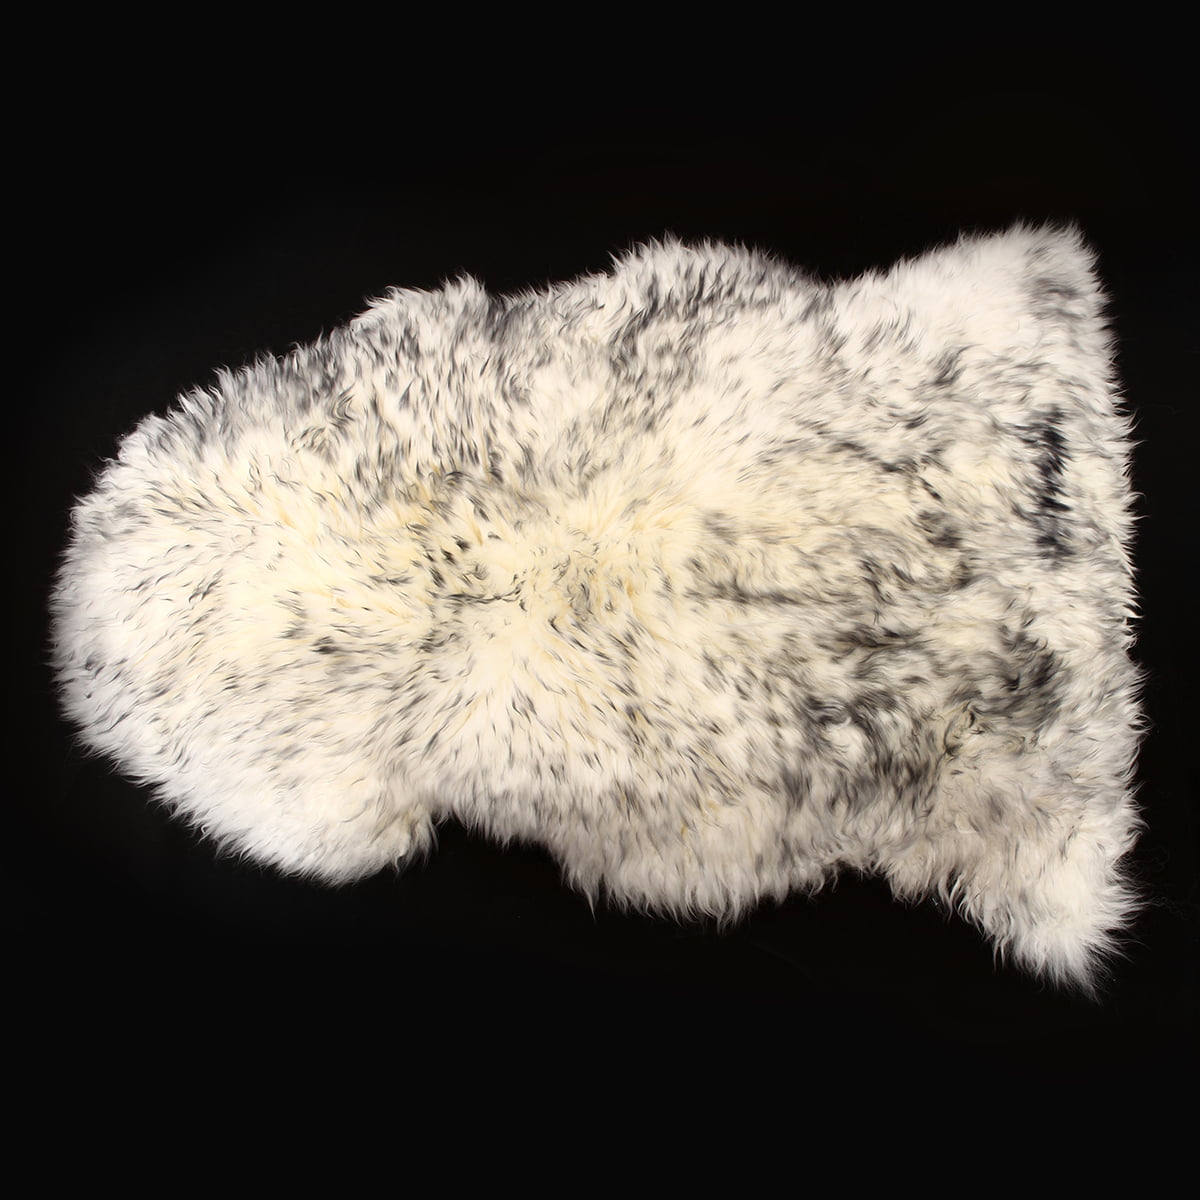 Details about   35"x24" Soft Genuine Sheepskin Fluffy Fur Rug Windward Single Natural Ivor MM 